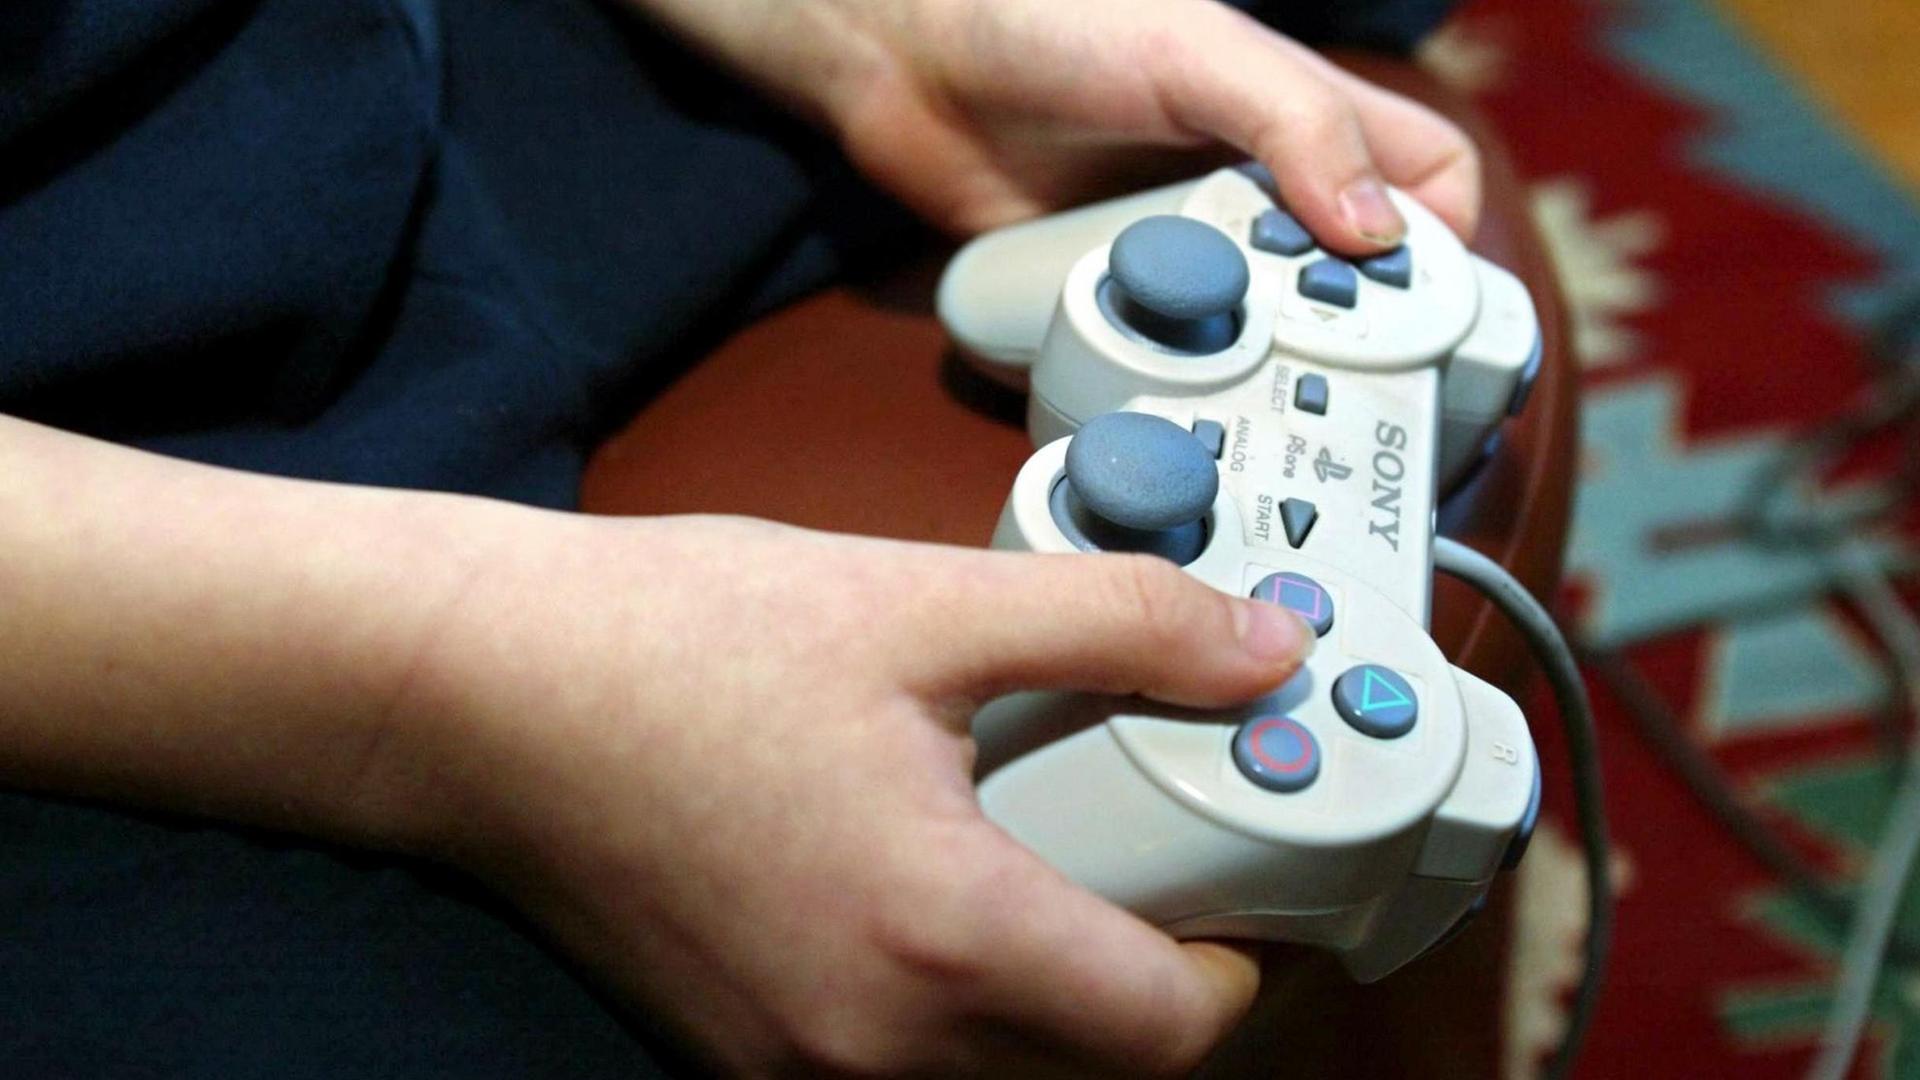 Ein Junge sitzt im Wohnzimmer und spielt ein Playstation-Videospiel mit der typischen Spielekonsole.